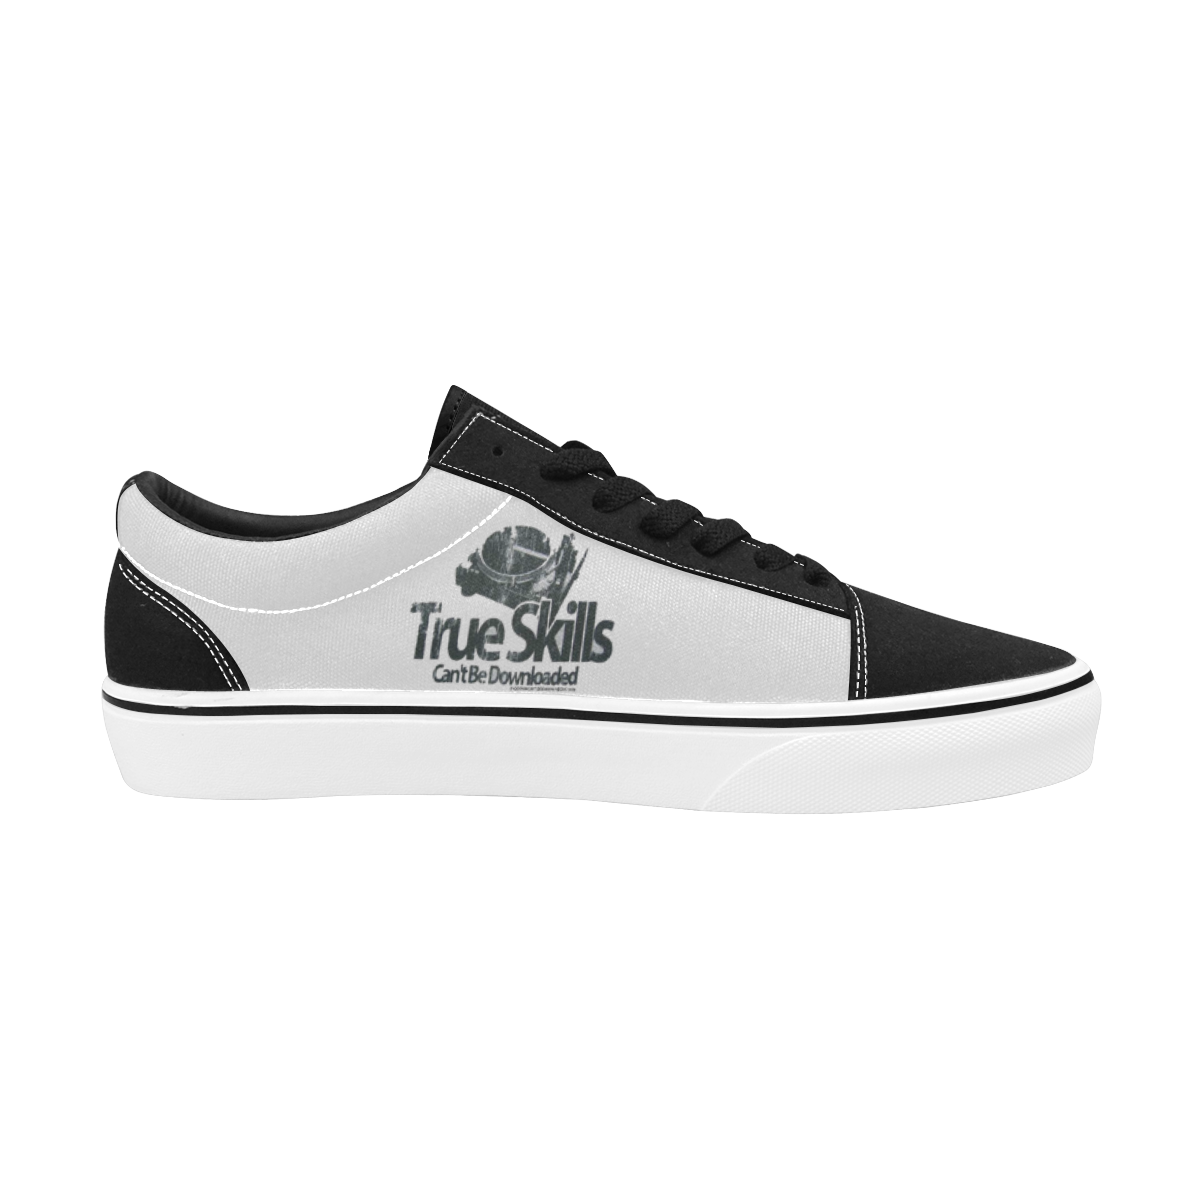 Low Top True Skills Sneakers Men's Low Top Skateboarding Shoes (Model E001-2)